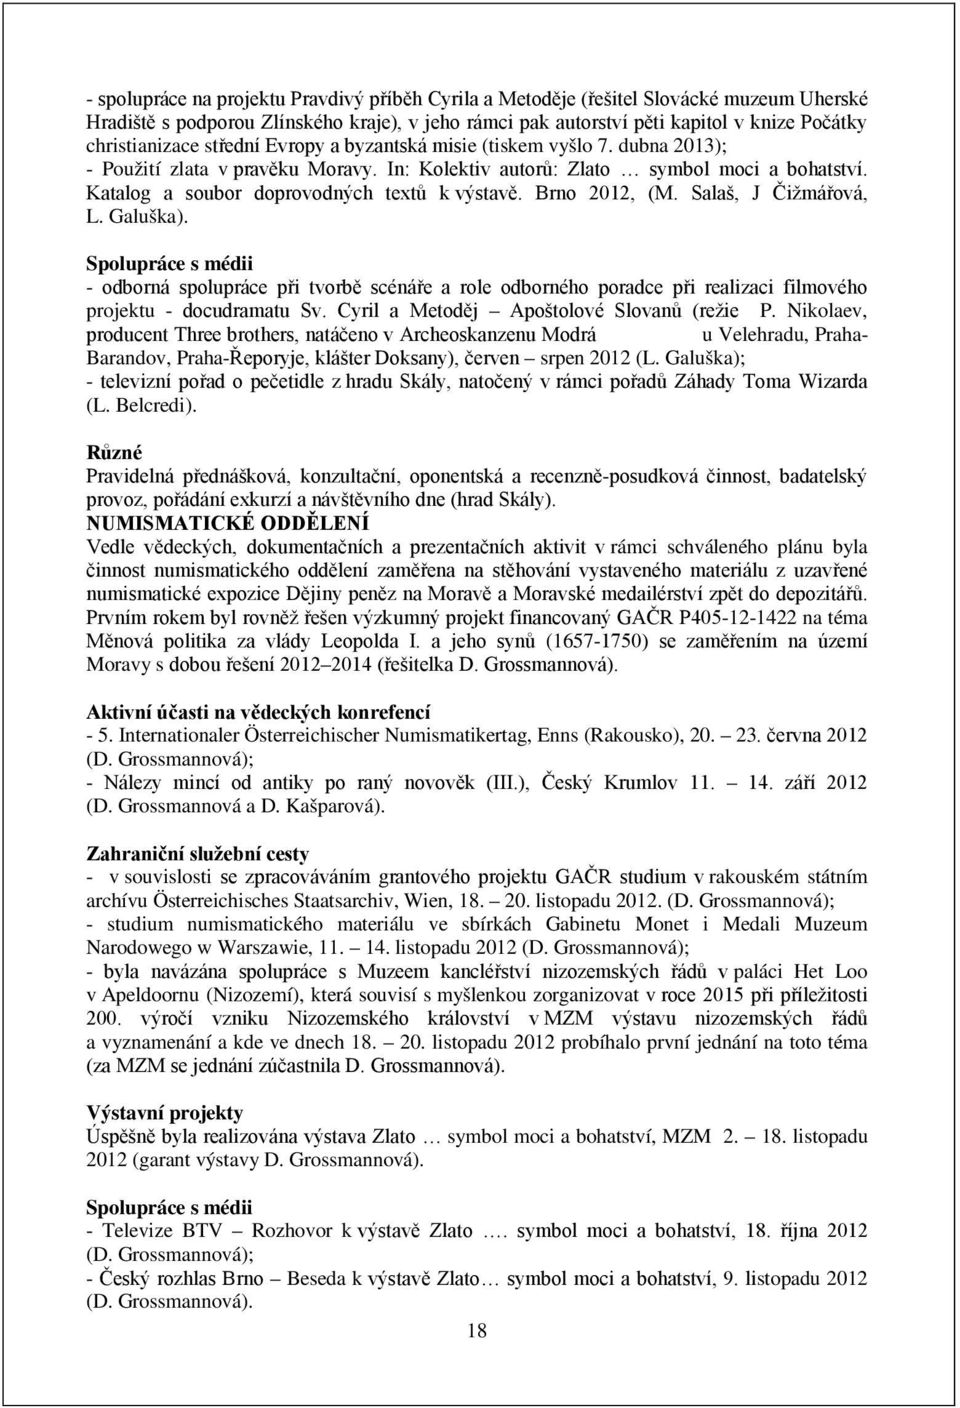 Katalog a soubor doprovodných textů k výstavě. Brno, (M. Salaš, J Čižmářová, L. Galuška).